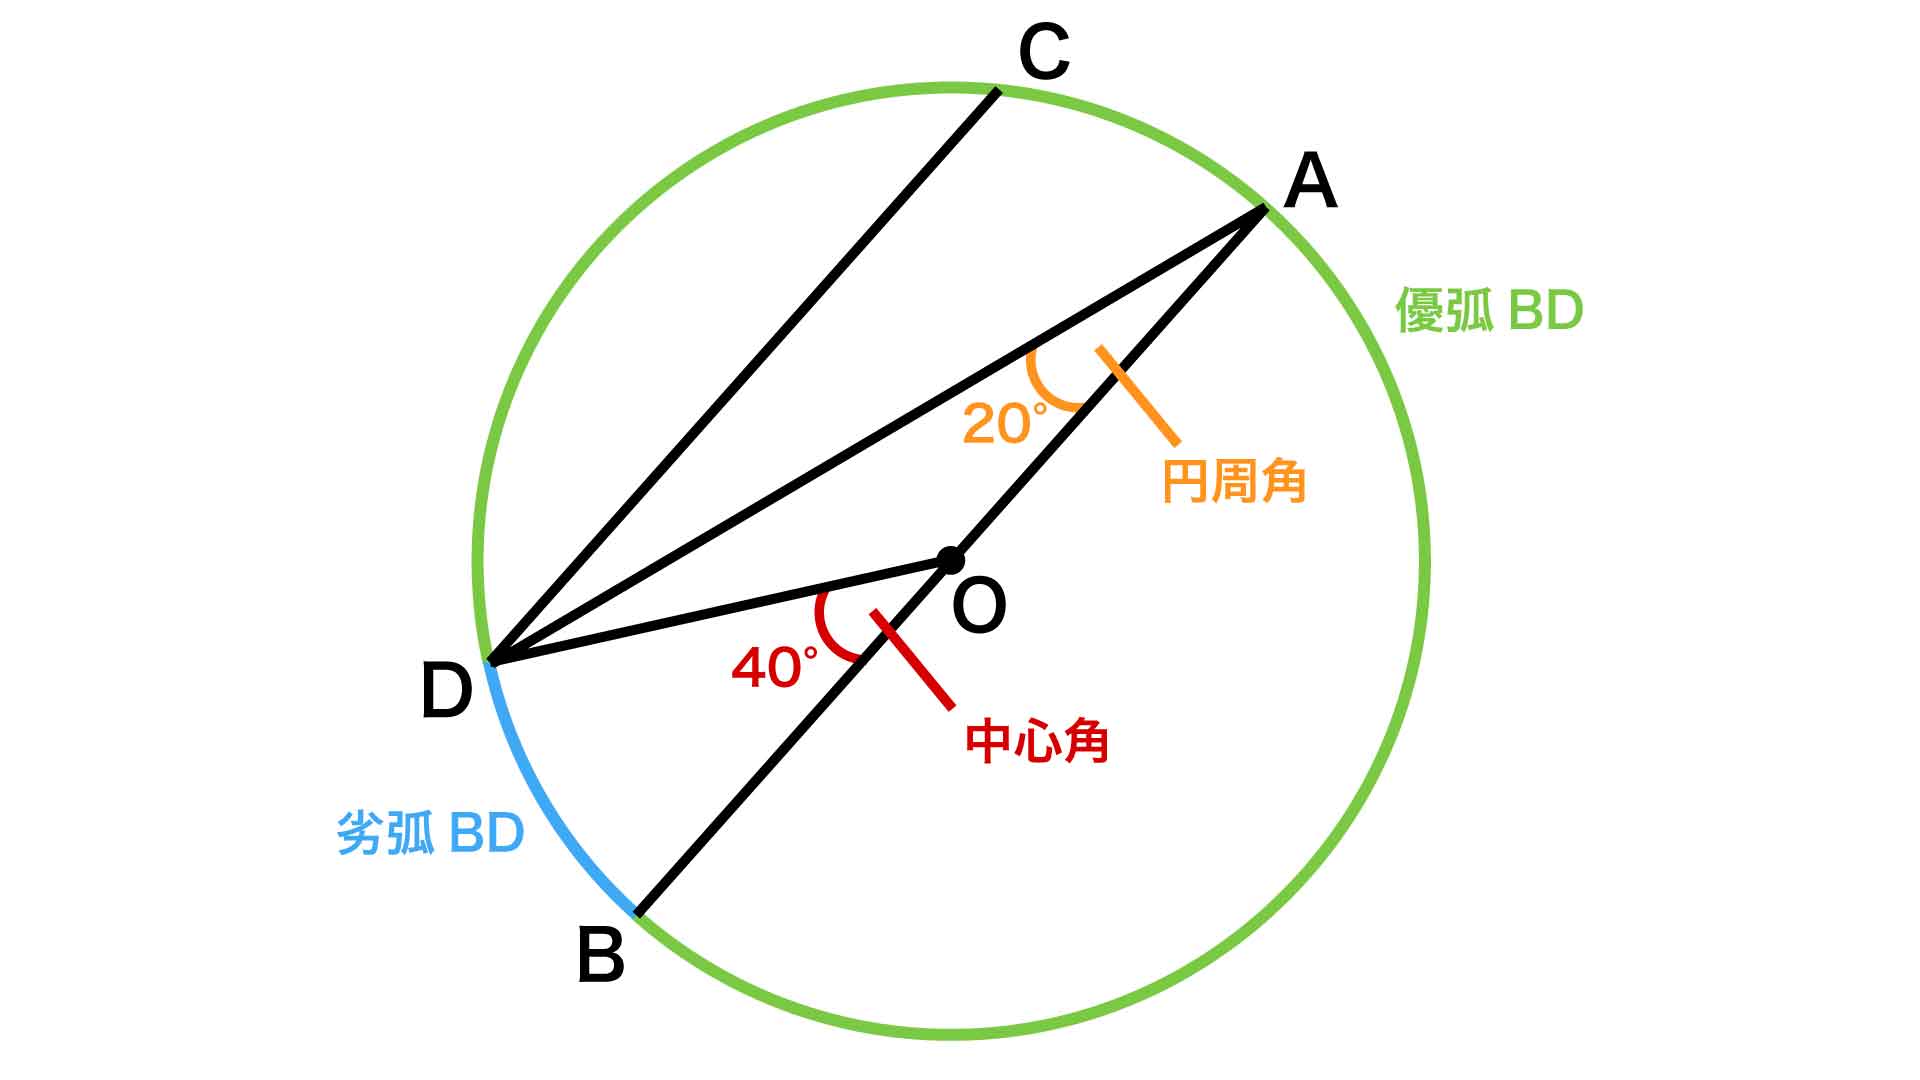 中学受験レベル 円の中の三角形 の角度を求める問題に挑戦